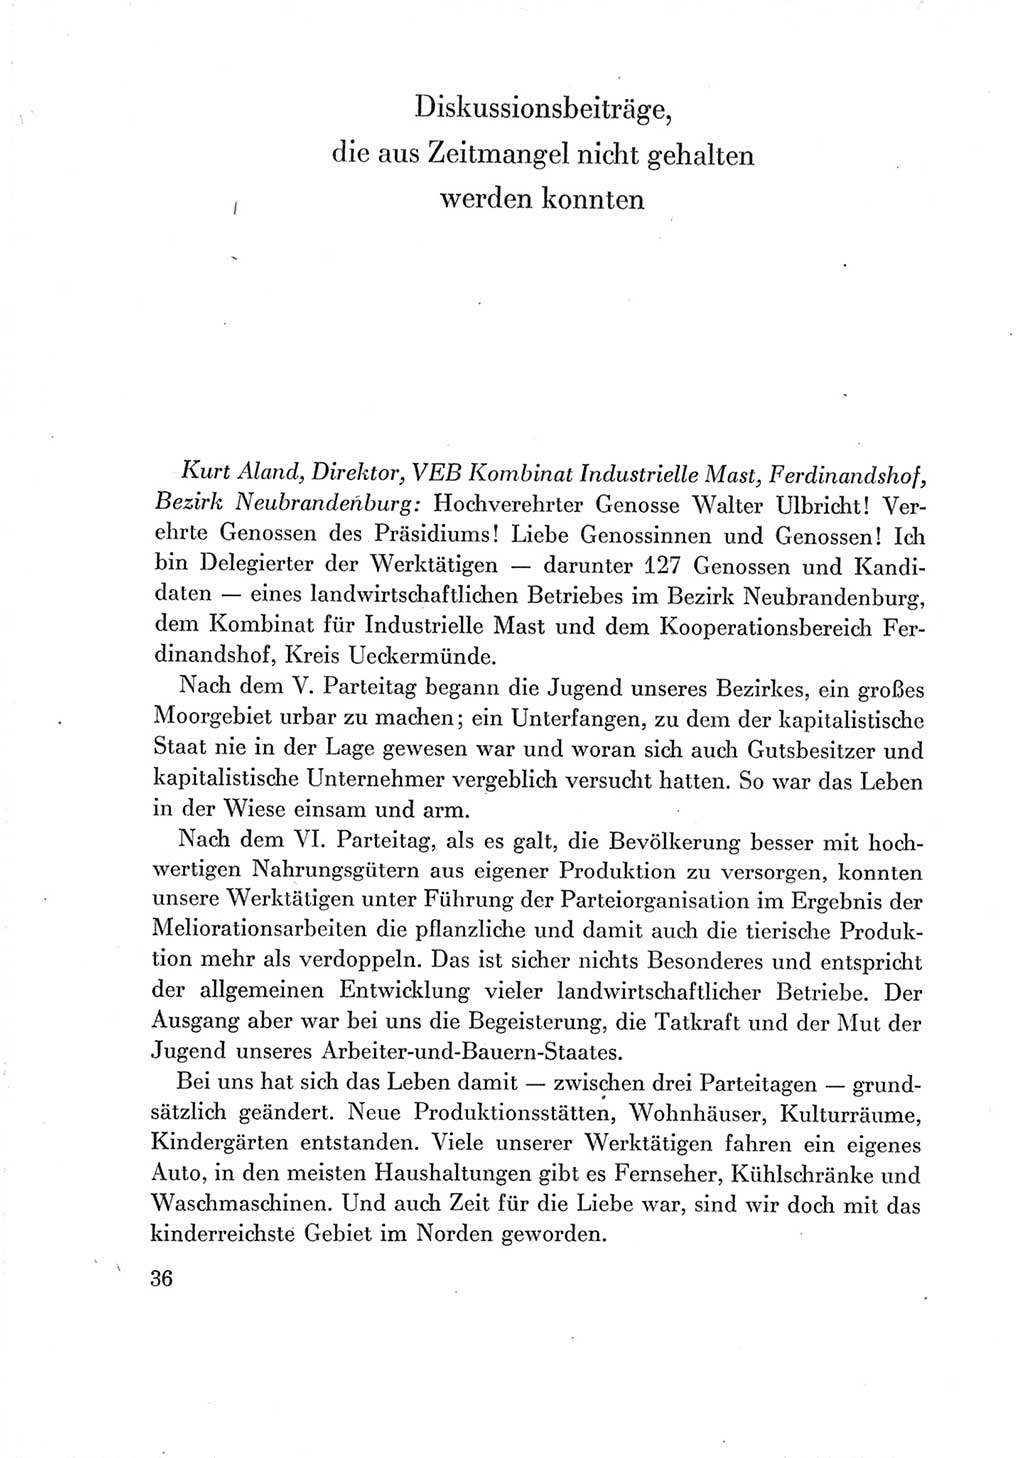 Protokoll der Verhandlungen des Ⅶ. Parteitages der Sozialistischen Einheitspartei Deutschlands (SED) [Deutsche Demokratische Republik (DDR)] 1967, Band Ⅲ, Seite 36 (Prot. Verh. Ⅶ. PT SED DDR 1967, Bd. Ⅲ, S. 36)